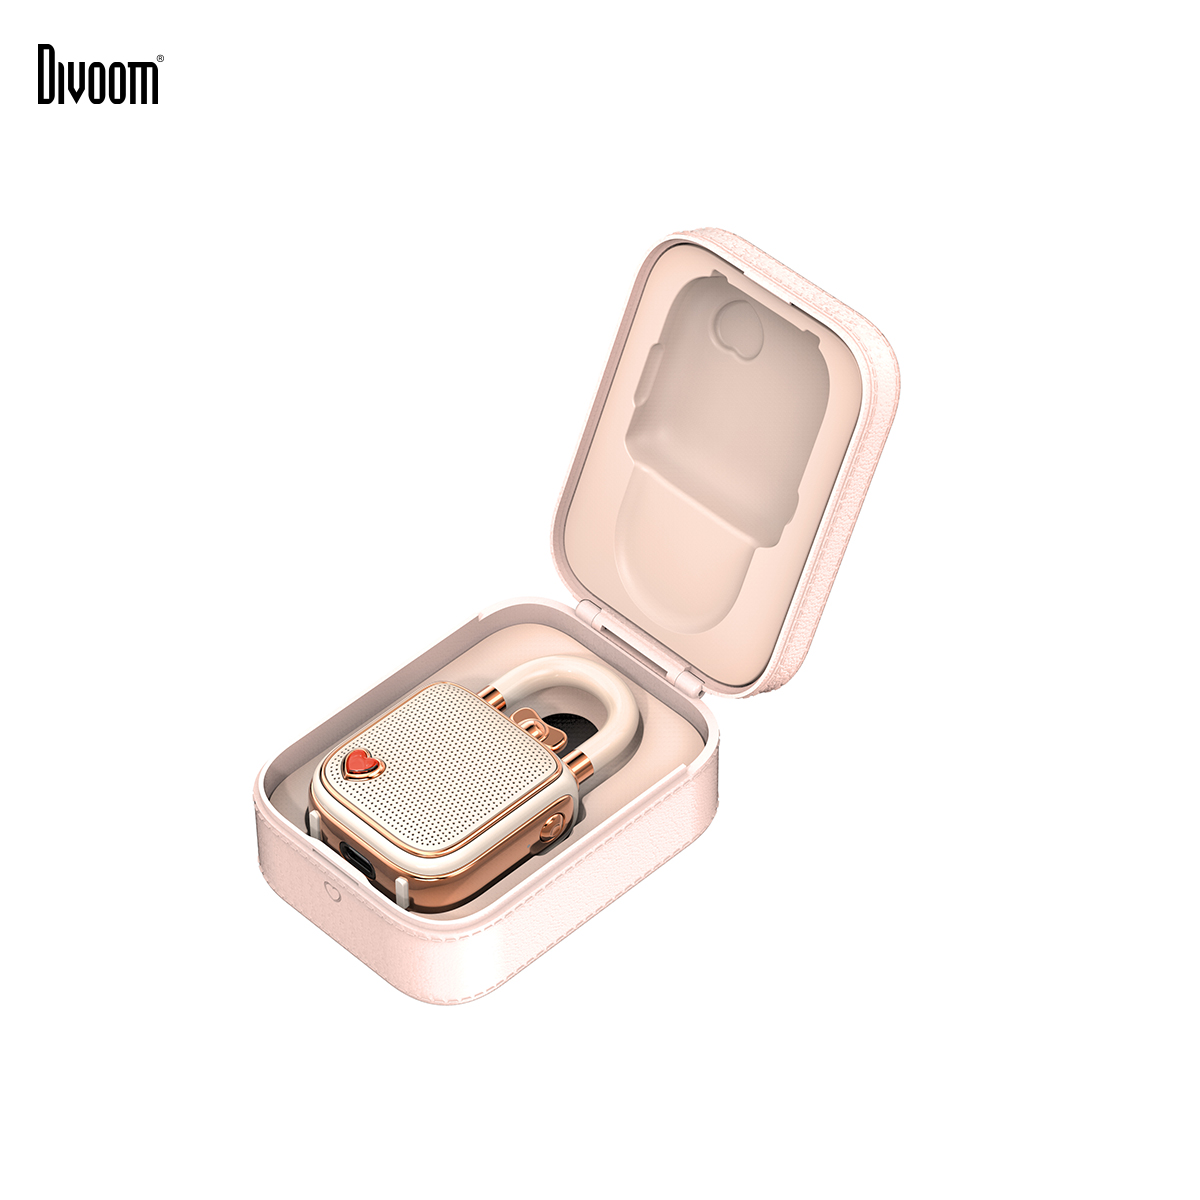 Loa Bluetooth Divoom Lovelock Pink - Hàng chính hãng